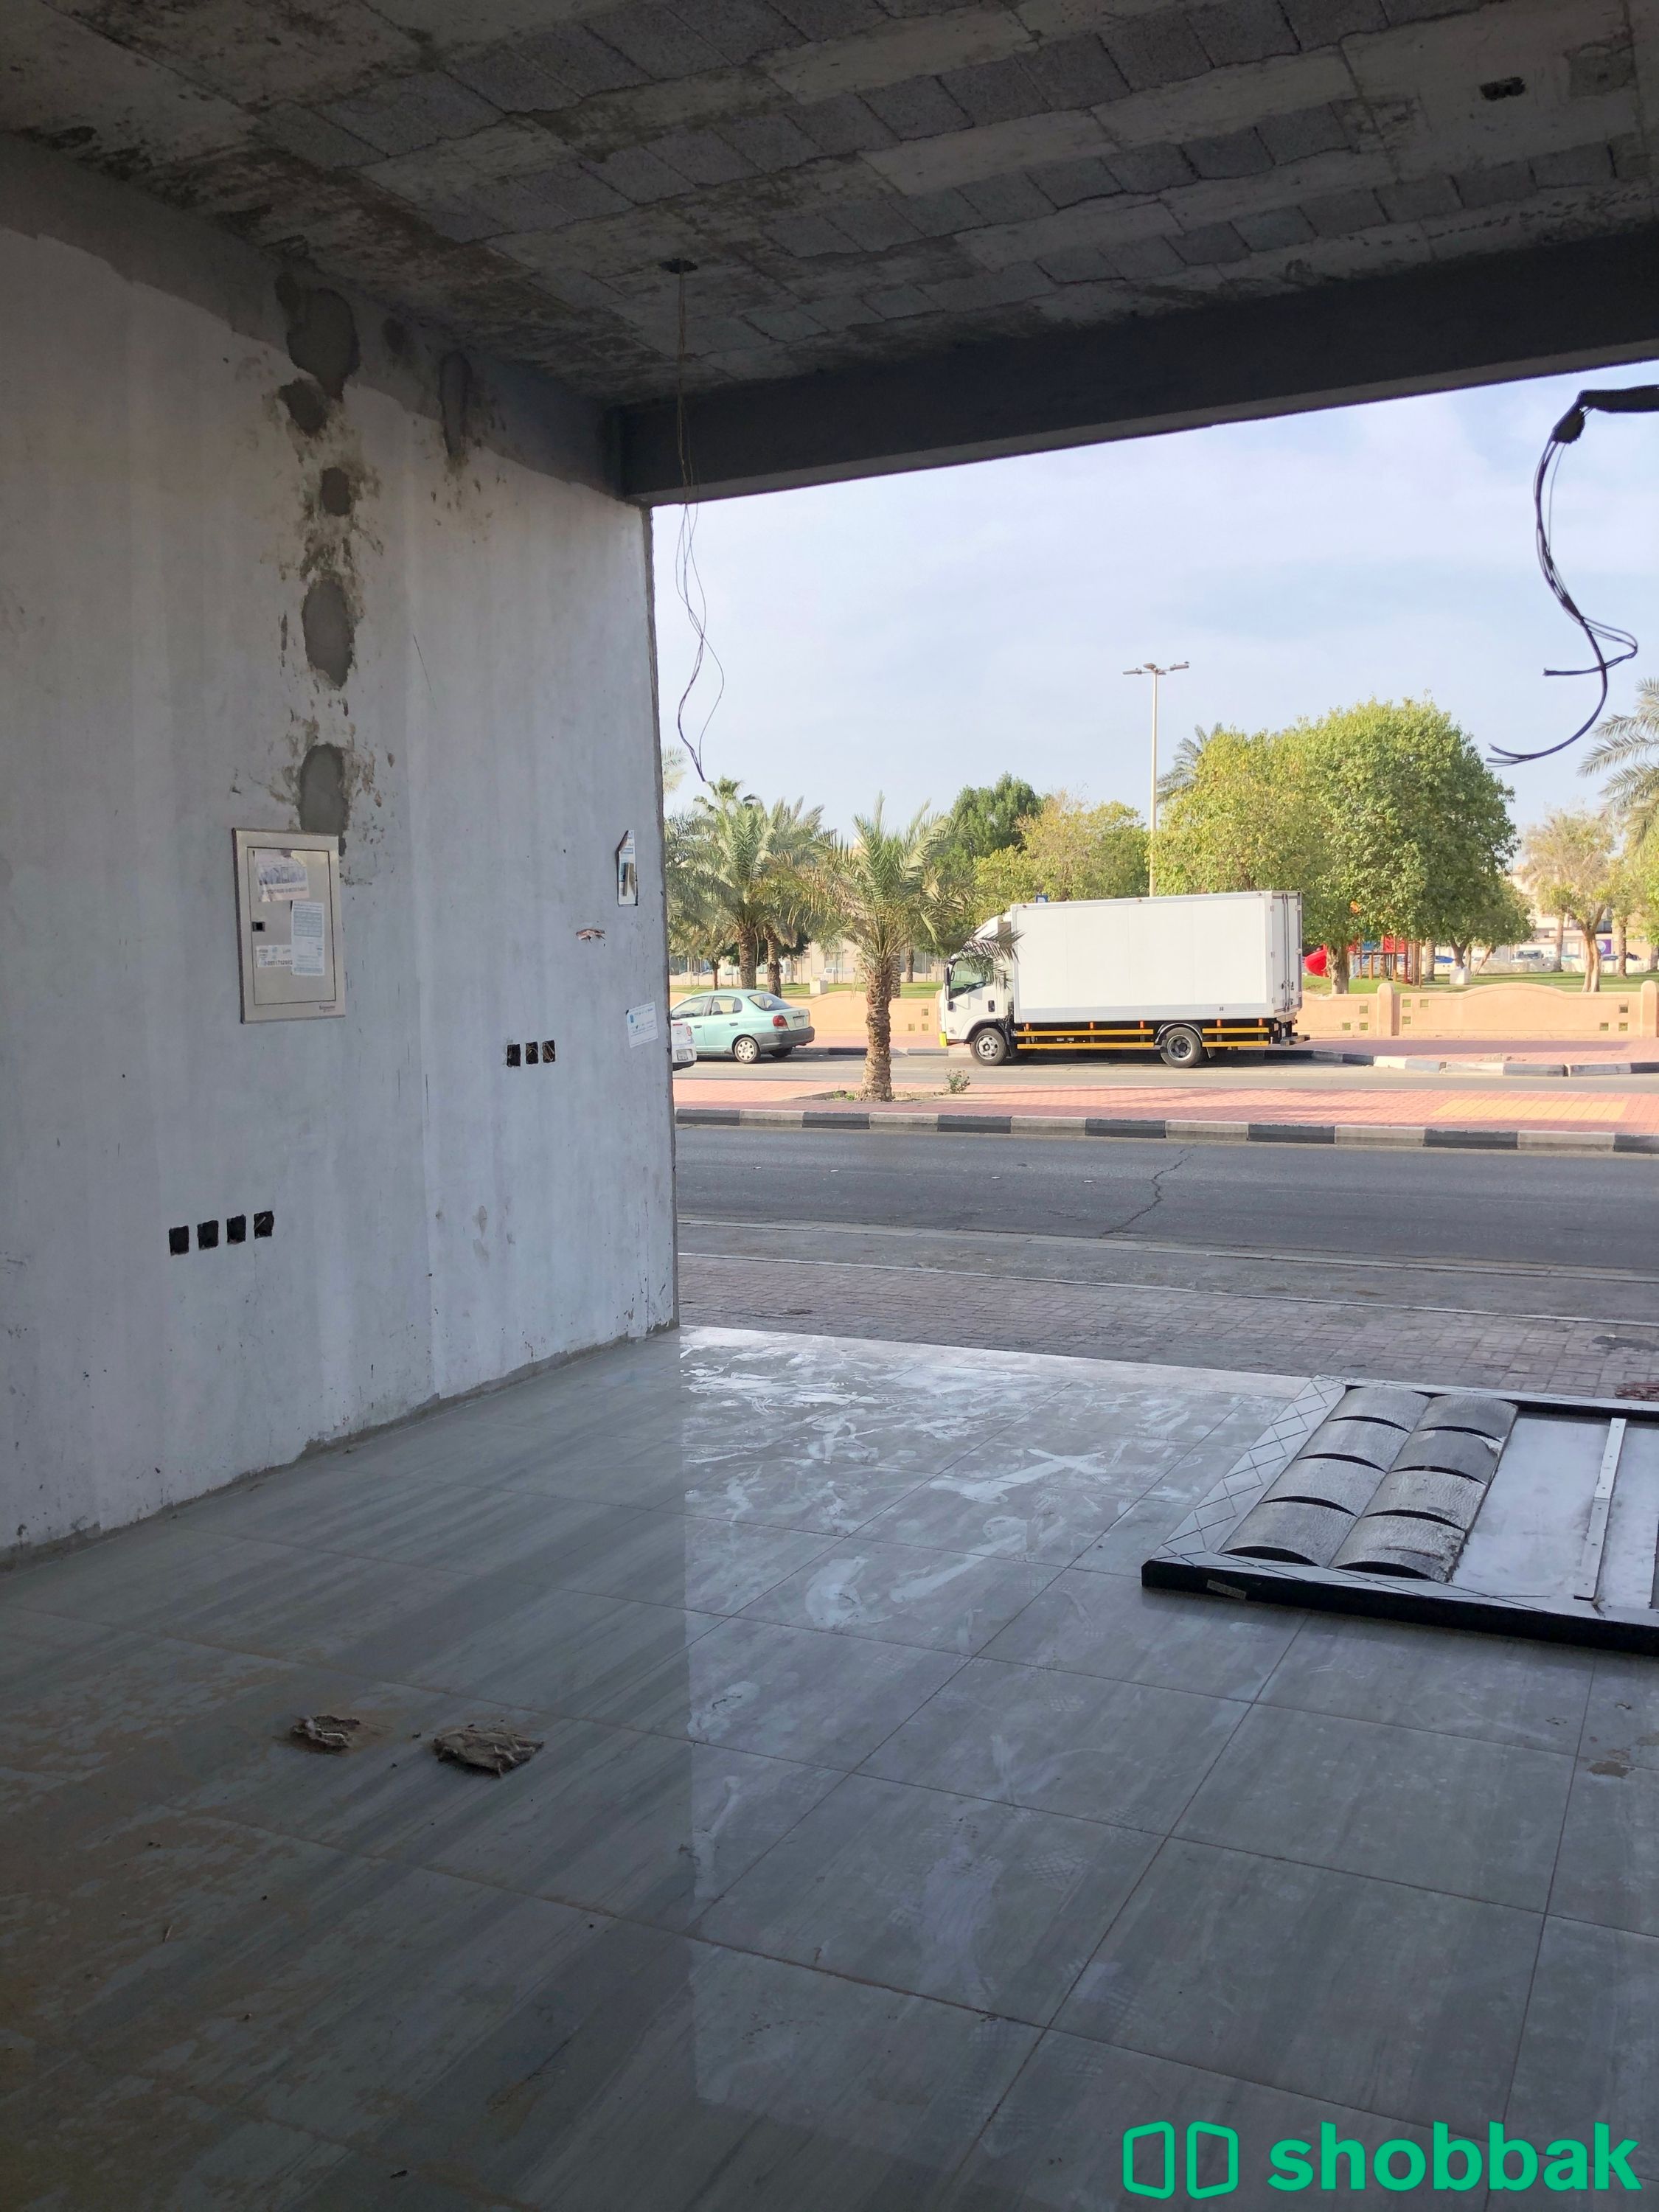 محل رقم 3 للإيجار - حي مدينه العمال الدمام  Shobbak Saudi Arabia